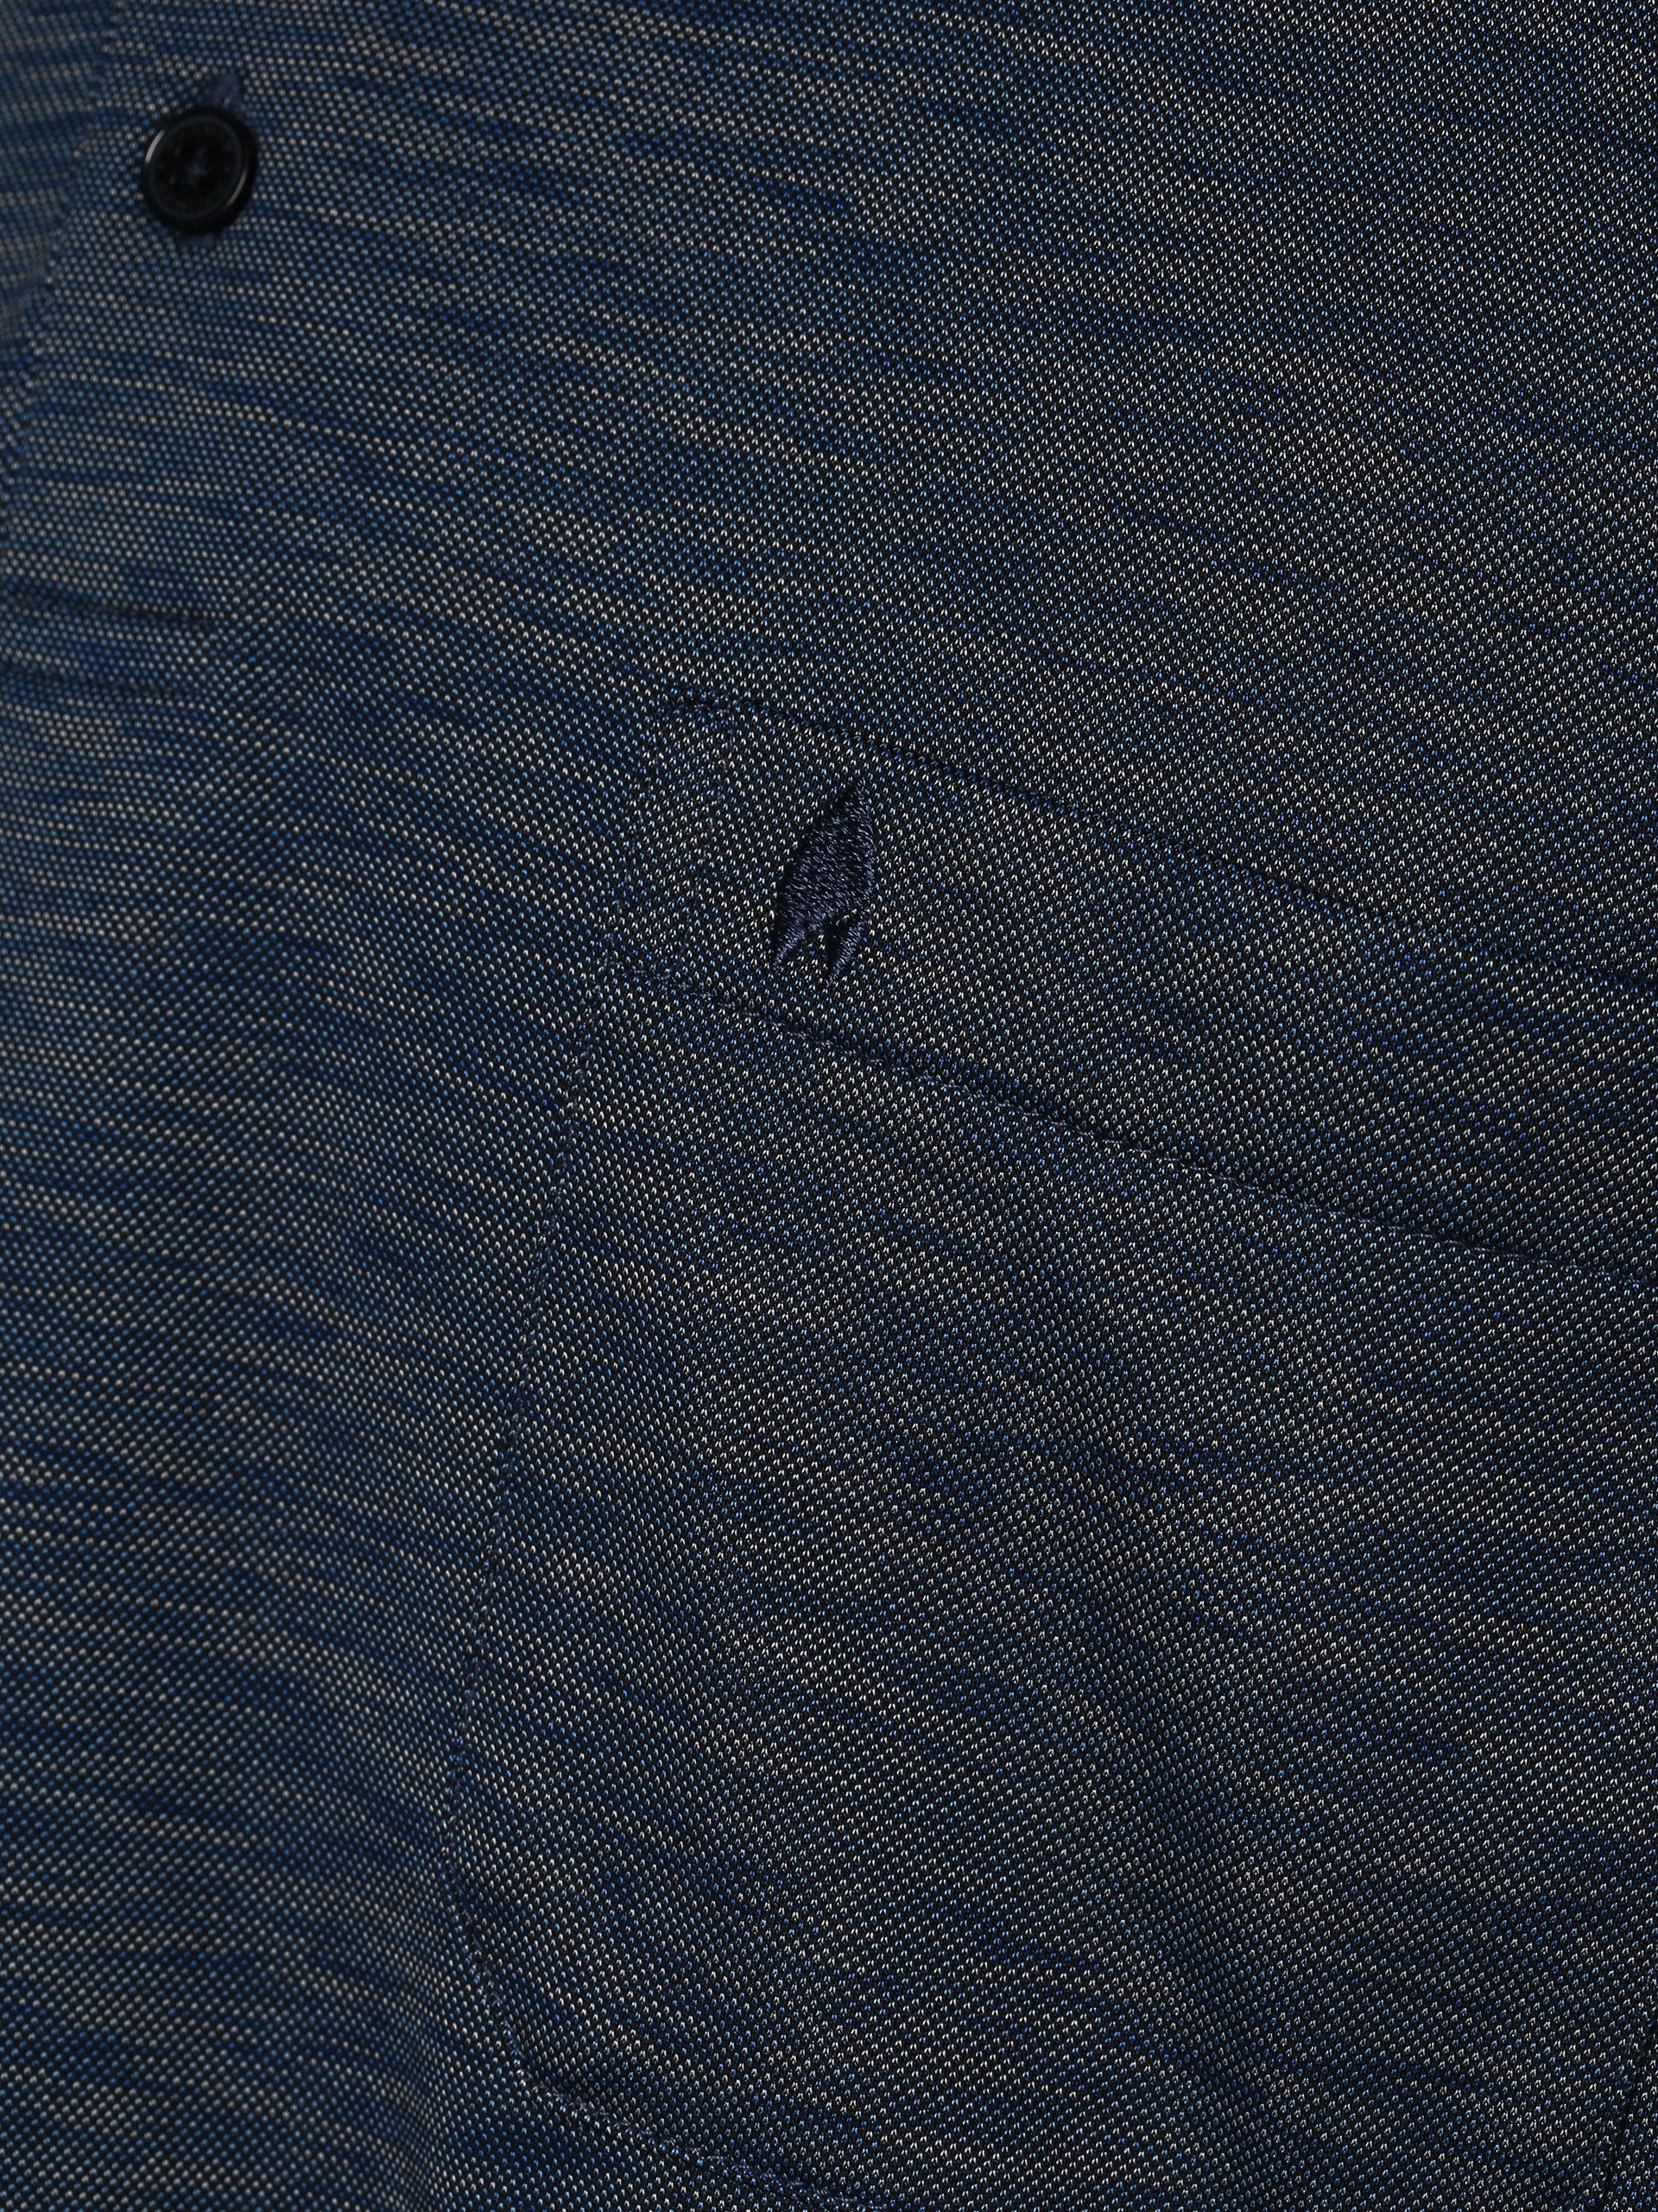 marine blau Poloshirt RAGMAN